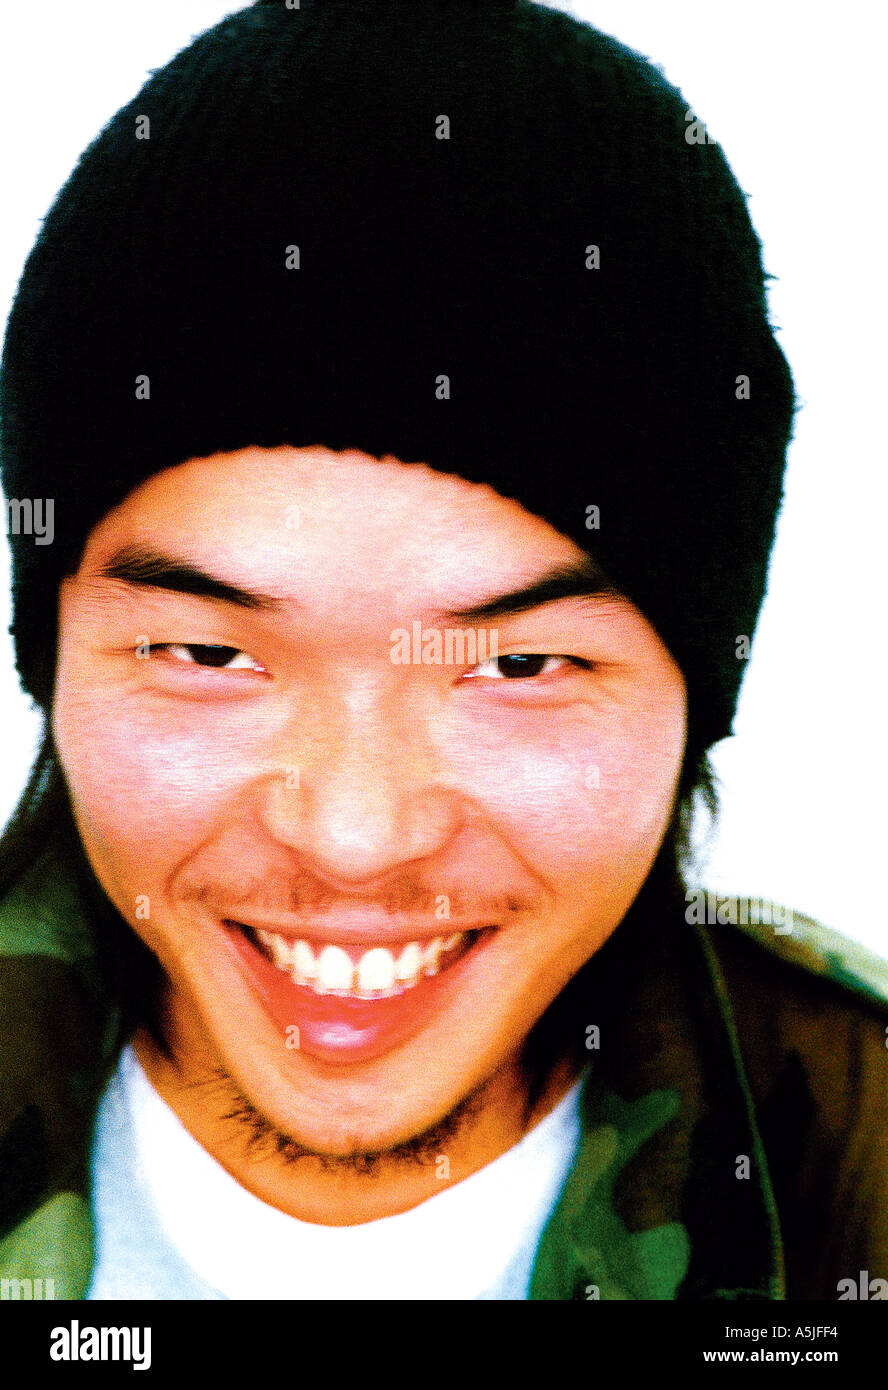 Ritratto uomo in beanie hat sorridente Foto Stock